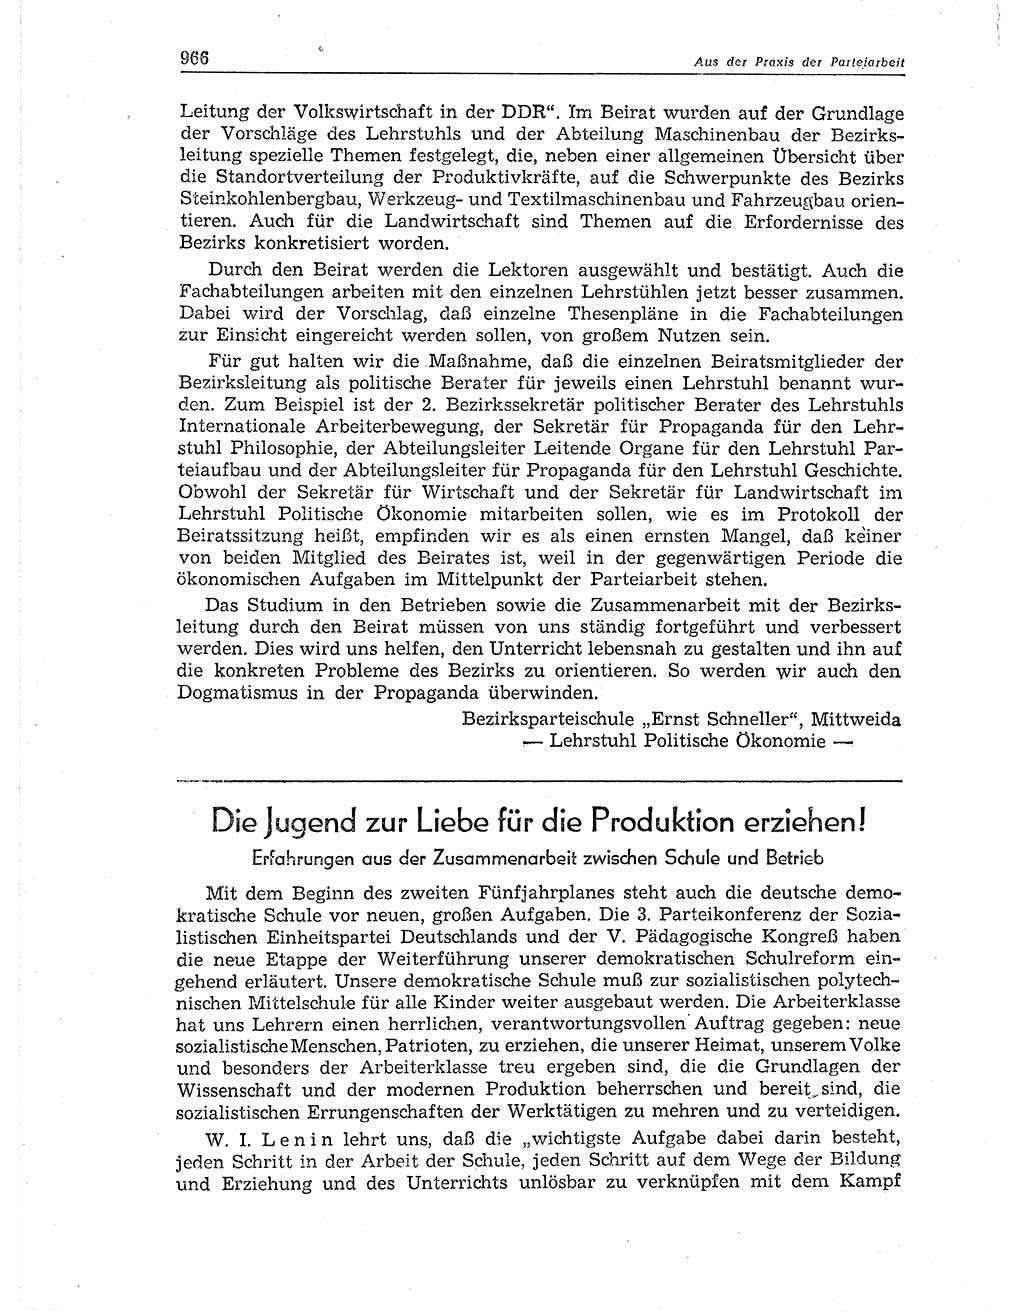 Neuer Weg (NW), Organ des Zentralkomitees (ZK) der SED (Sozialistische Einheitspartei Deutschlands) für Fragen des Parteiaufbaus und des Parteilebens, 11. Jahrgang [Deutsche Demokratische Republik (DDR)] 1956, Seite 966 (NW ZK SED DDR 1956, S. 966)